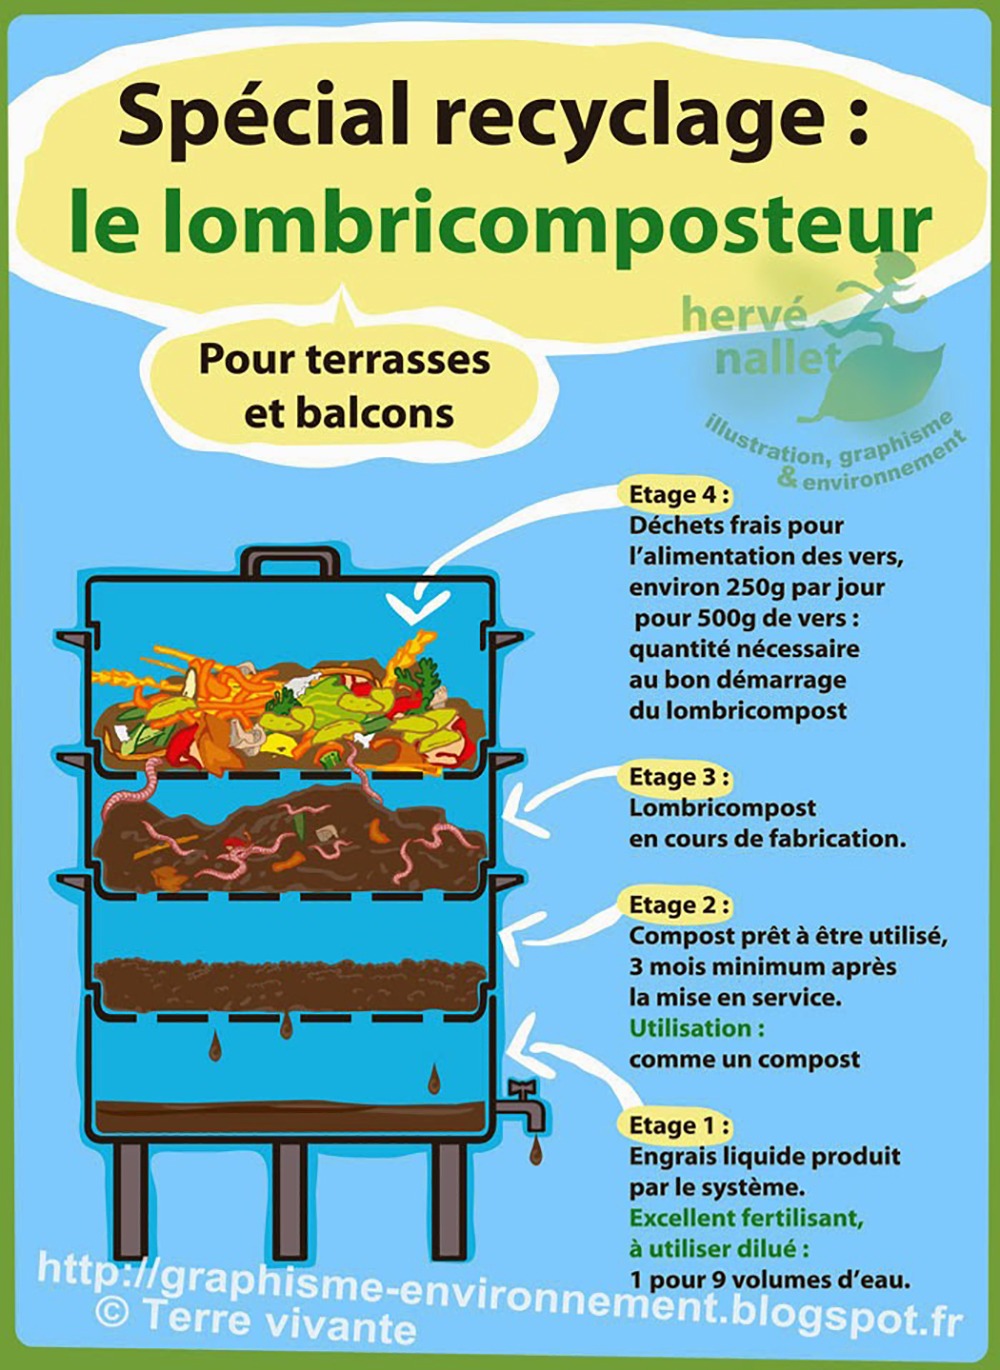 Les vers de compostage pour son lombricomposteur